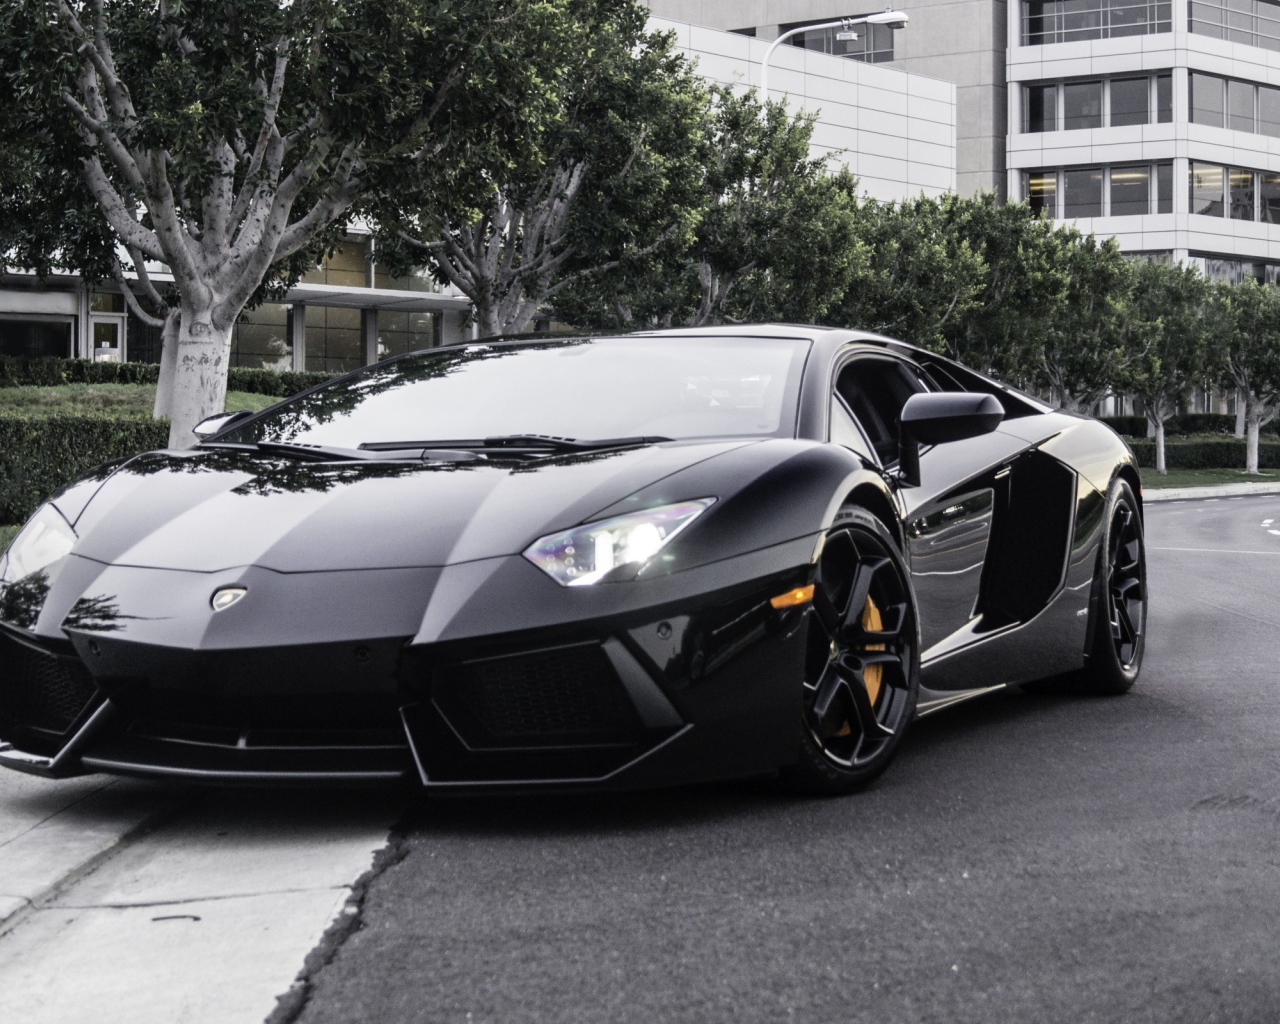 Lamborghini на улице